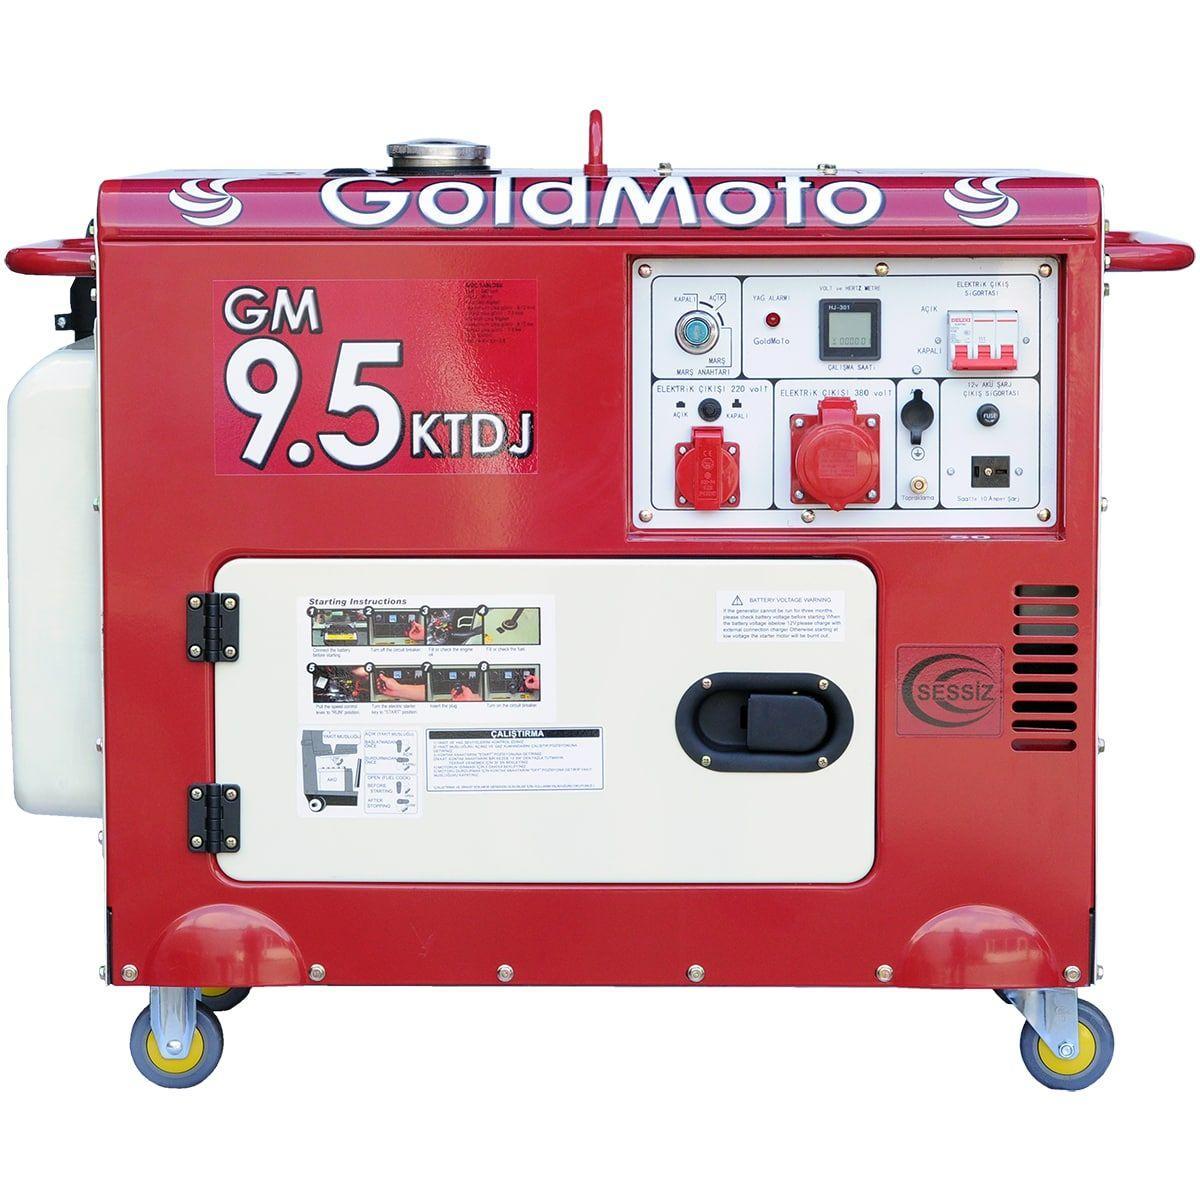 Інструкція генератор GoldMoto GM9.5KTDJ